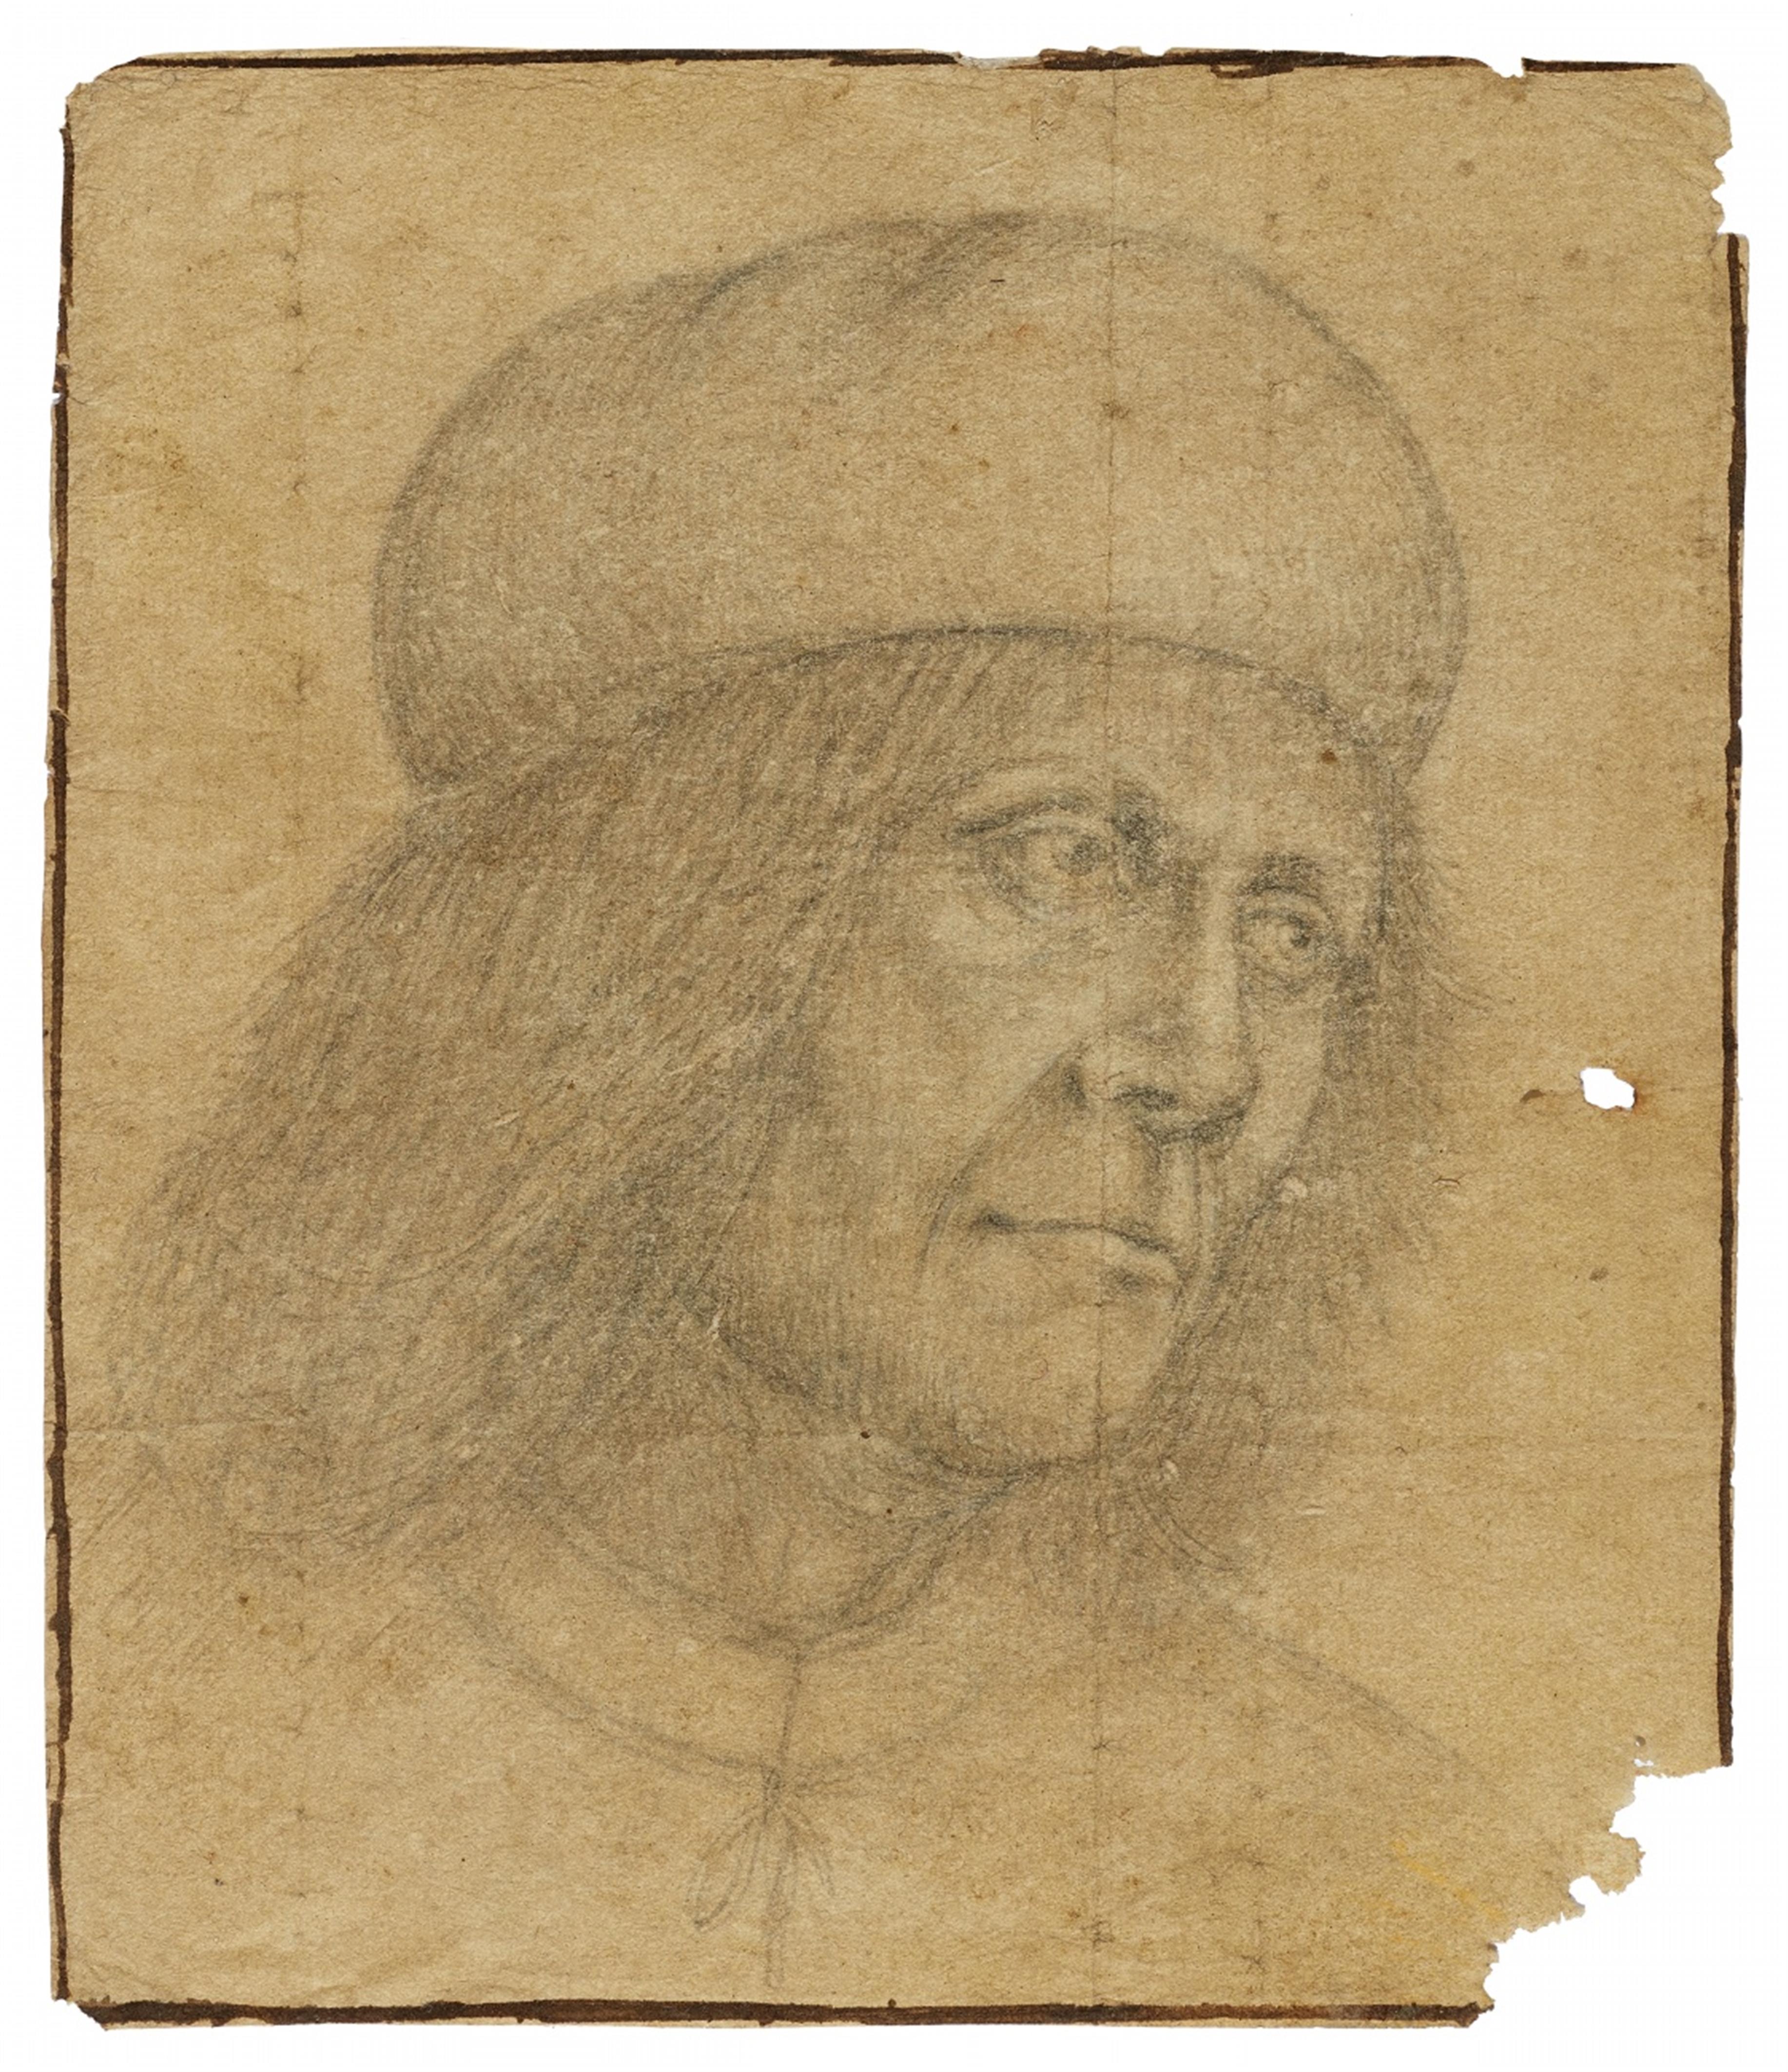 Venezianischer Meister des 16. Jahrhunderts - Bildnis eines Mannes mit Barett (Giovanni Bellini?)